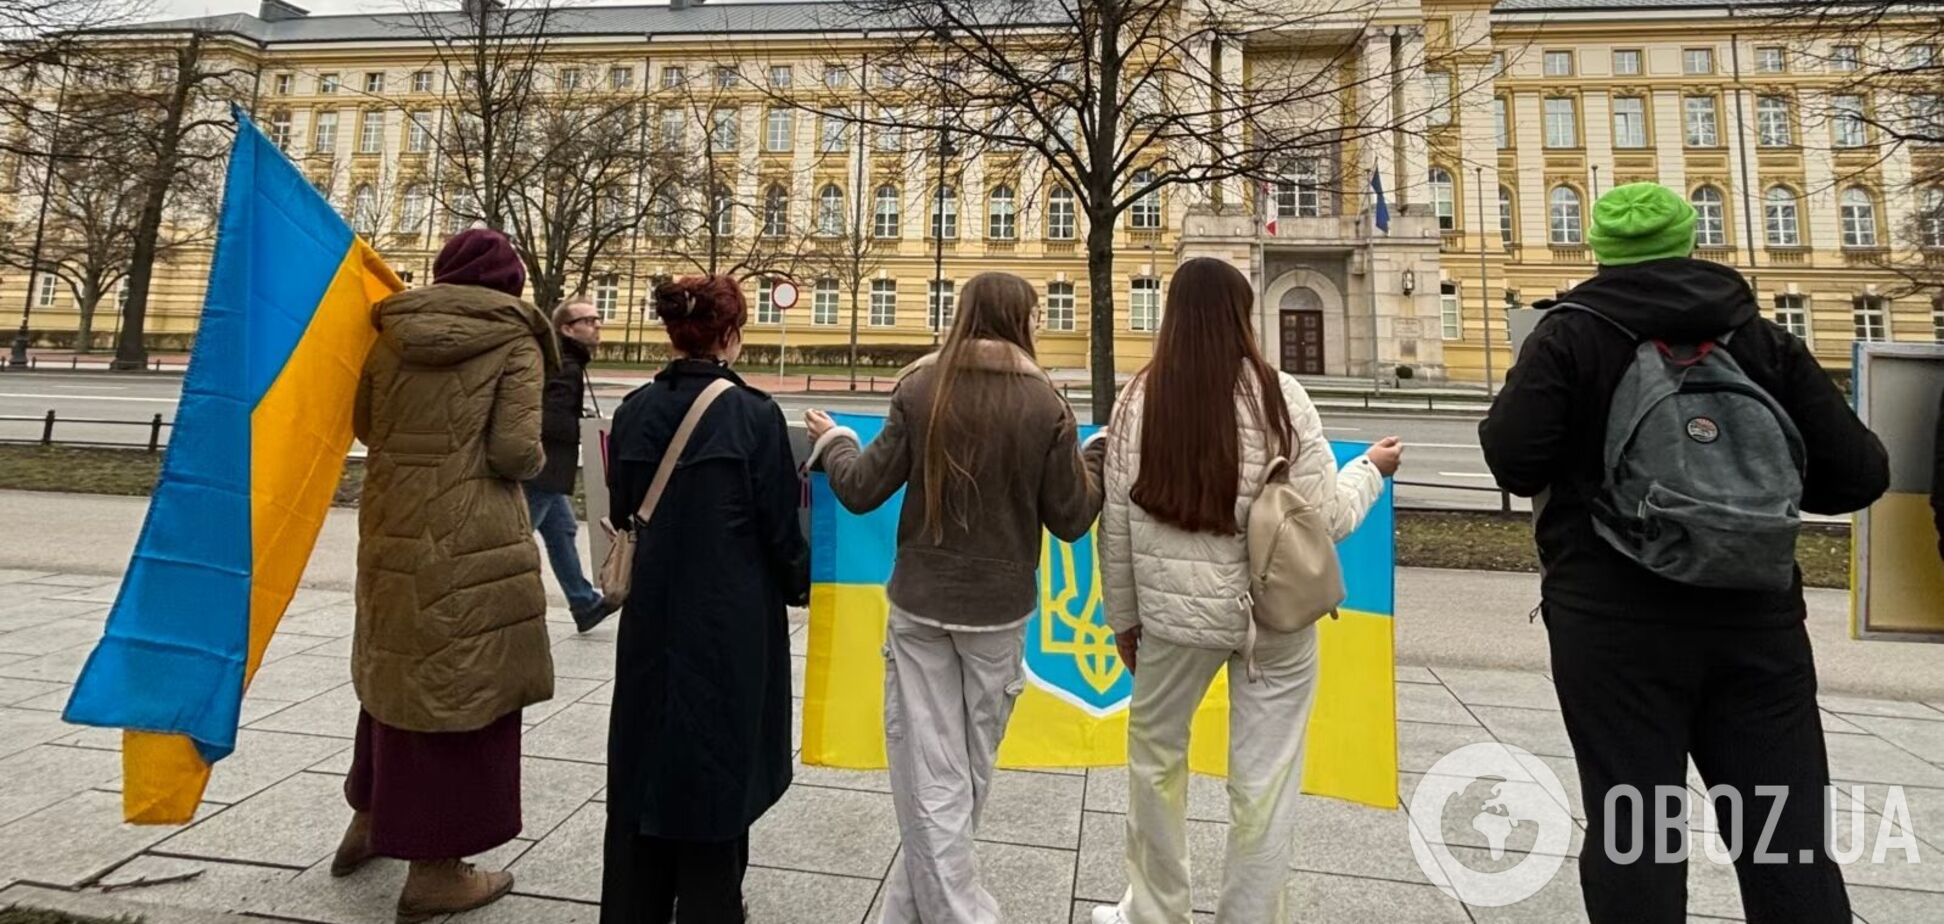 'Кордон – лінія життя': у Варшаві протестували проти блокади кордону з Україною. Фото
